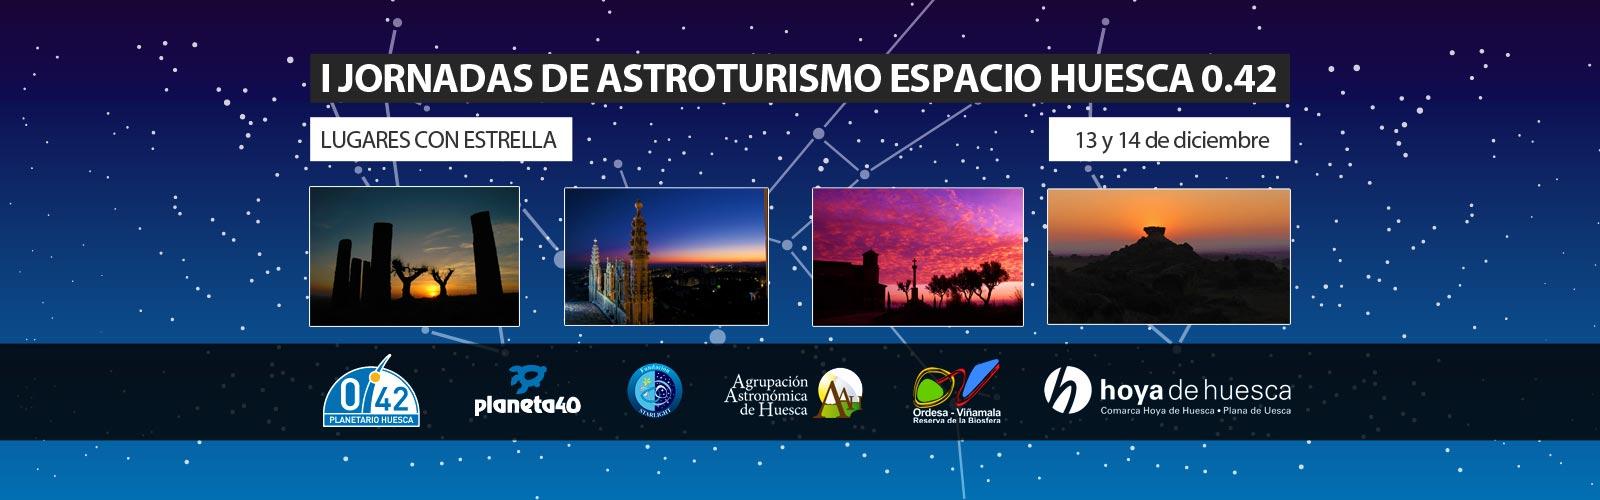 I Jornadas de Astroturismo Espacio Huesca 0.42, lugares con estrella.